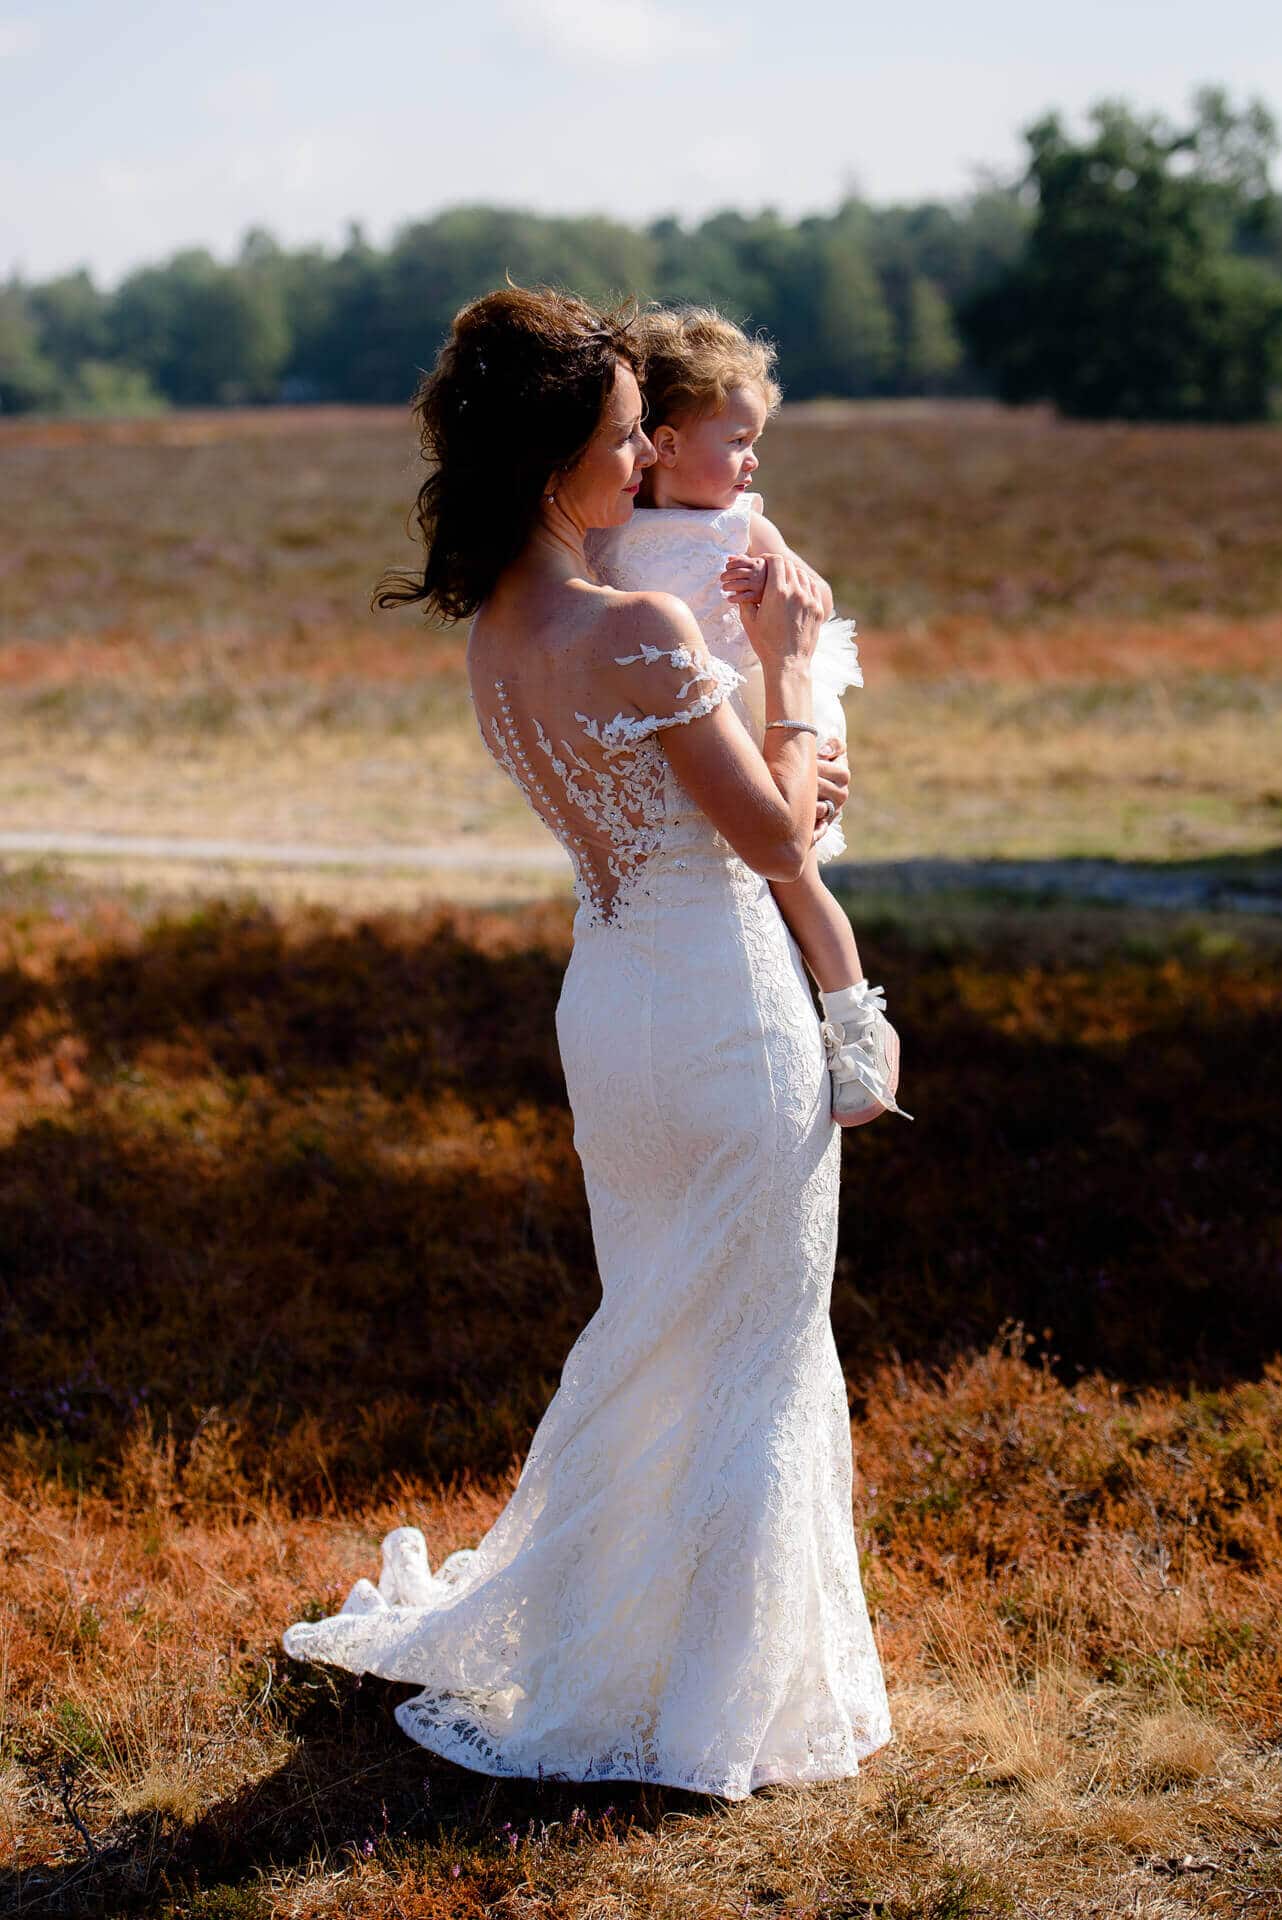 Bruiloft trouwfoto moeder en dochter door bruidsfotograaf Grietje Mesman uit Deventer